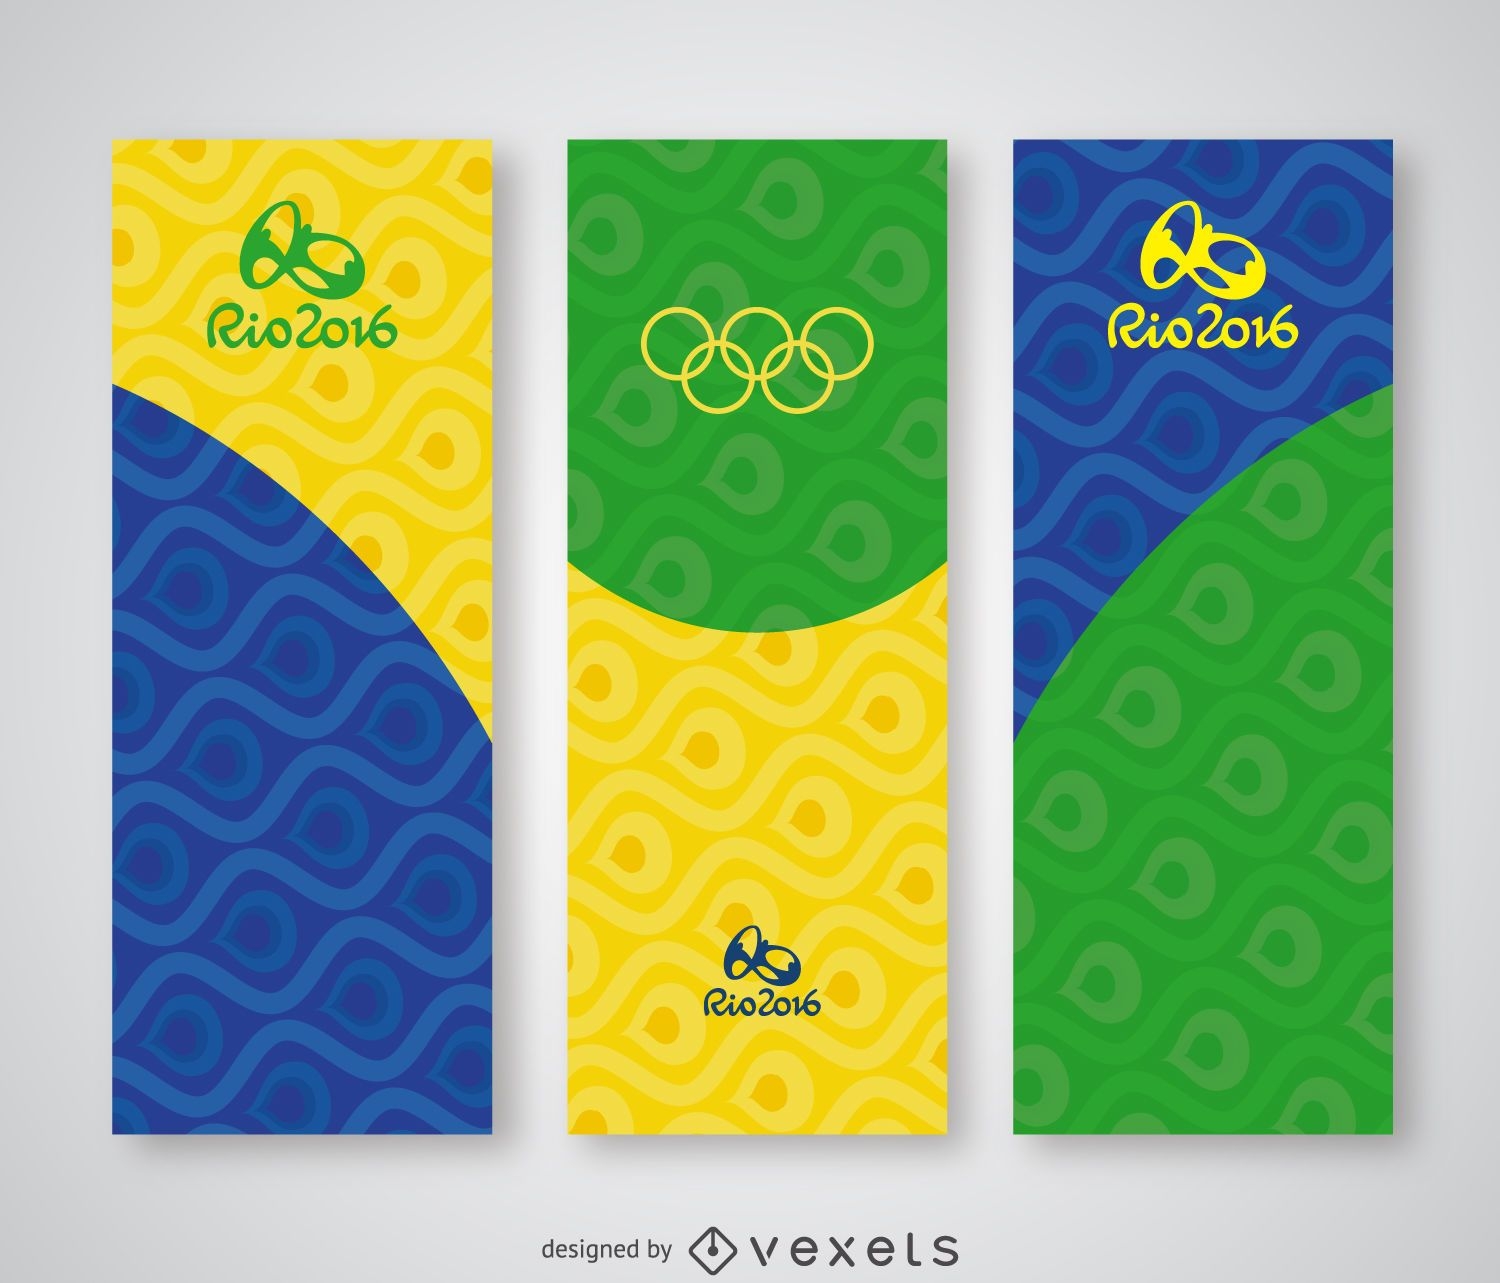 Rio 2016 vertical banner set